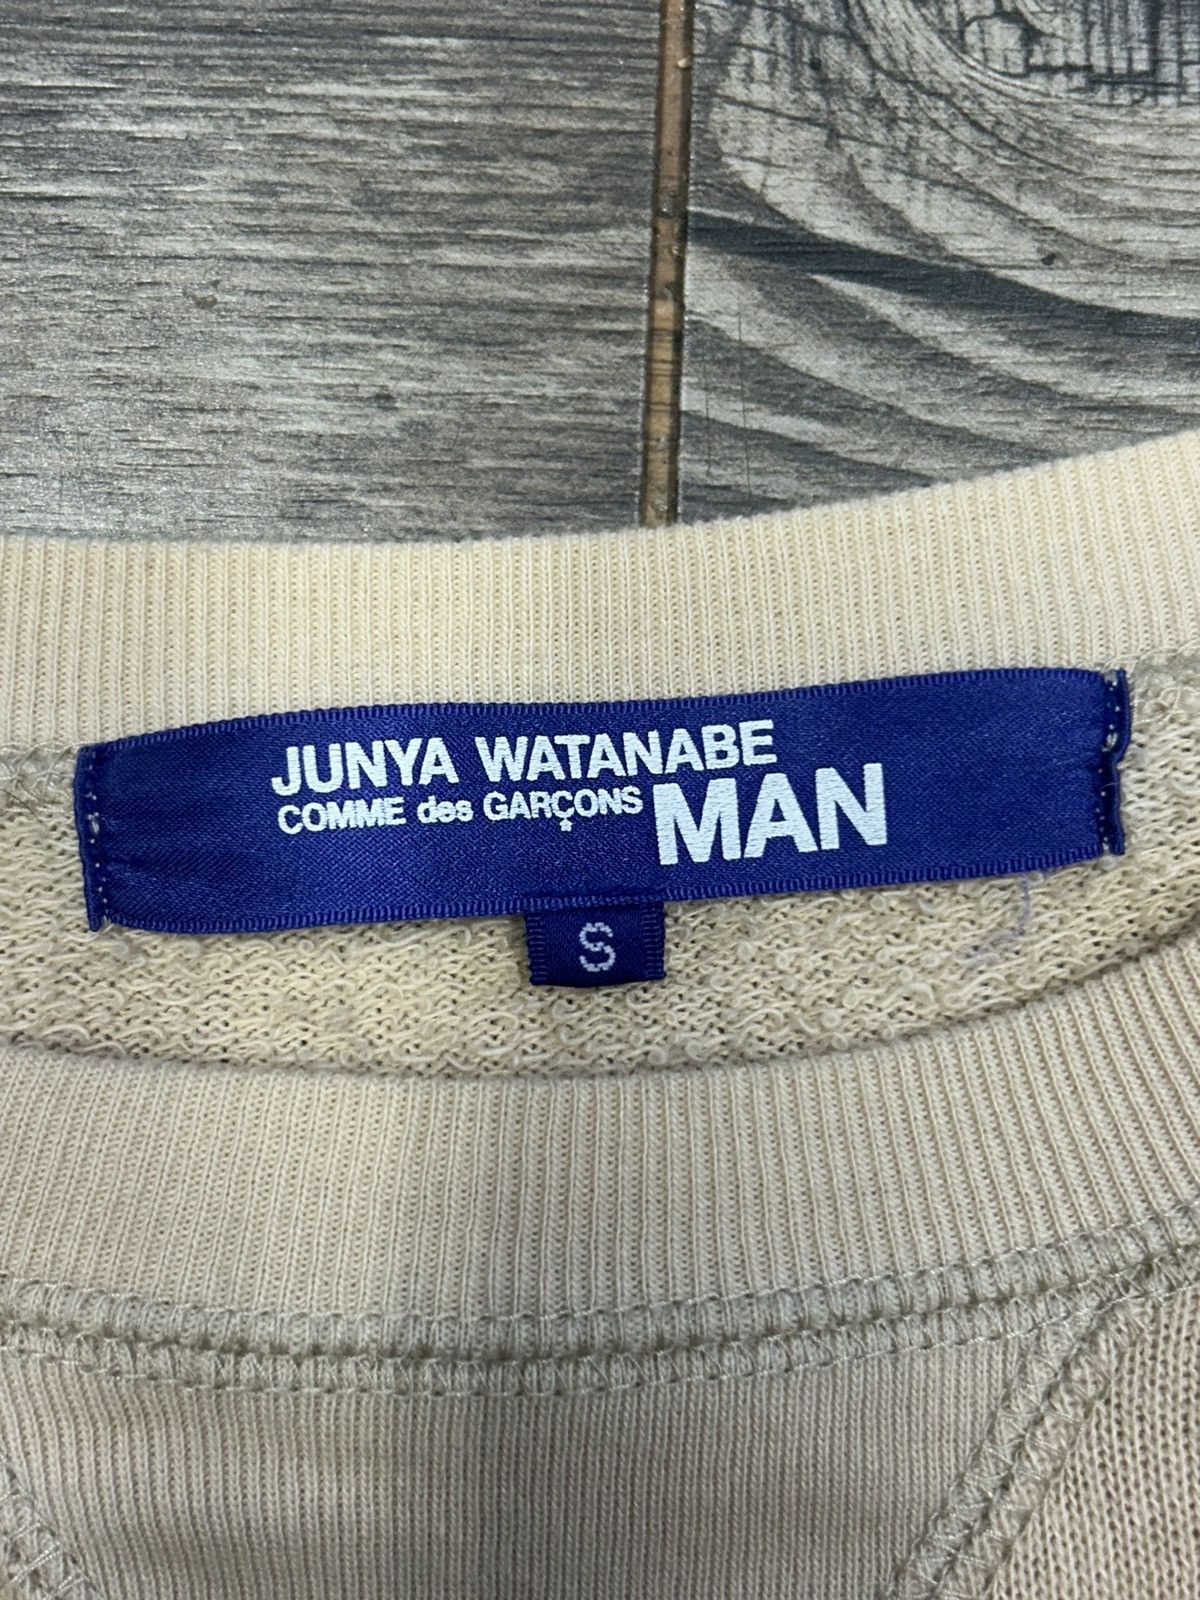 Junya Watanabe Junya Watanabe AW05 Mulhacen Sweatshirt | Grailed